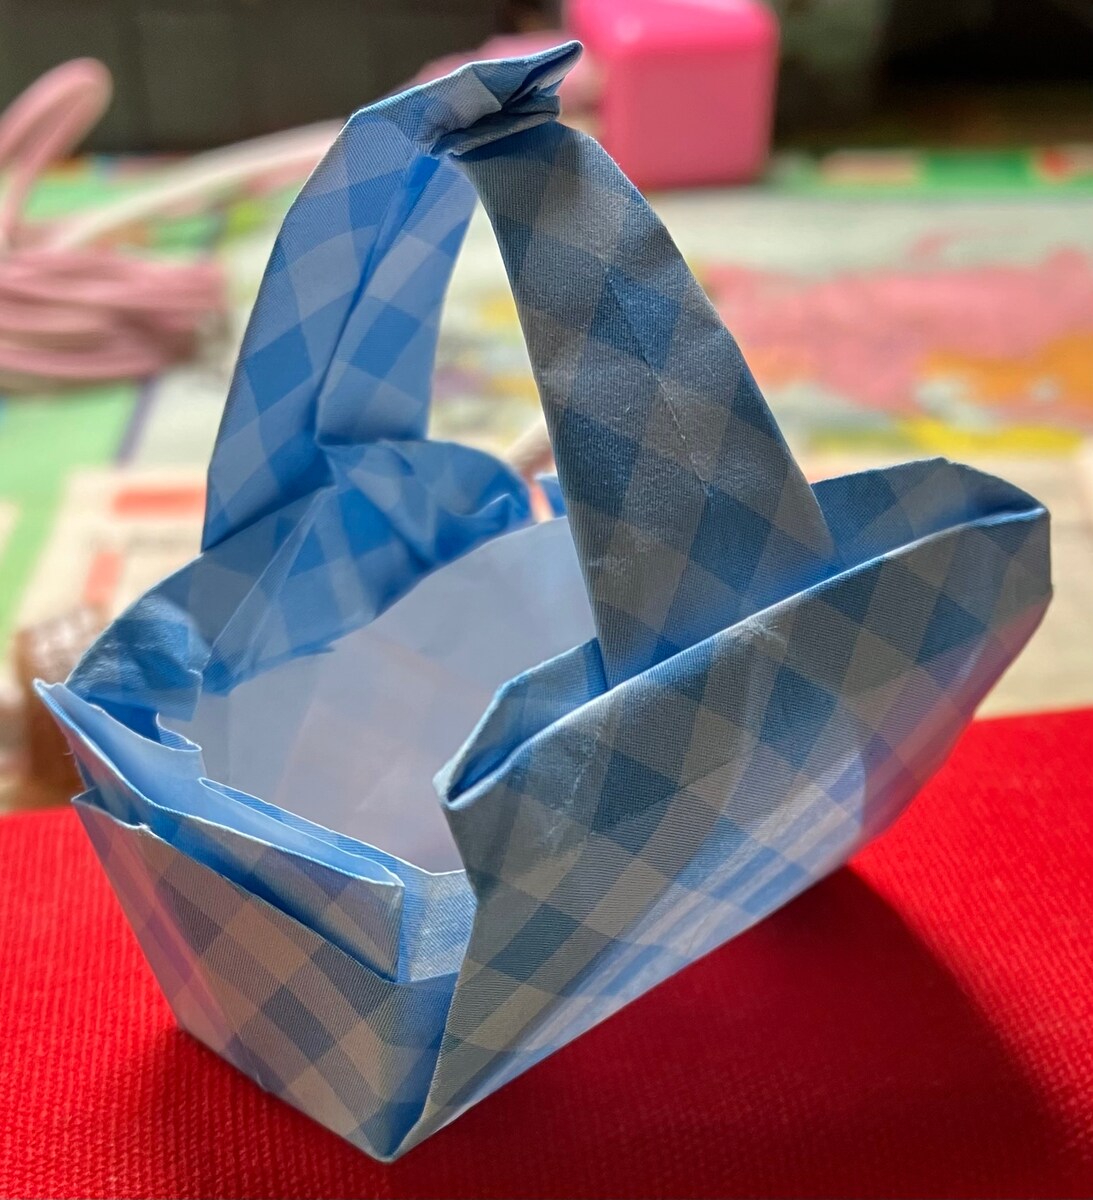 代表的な折り紙作品